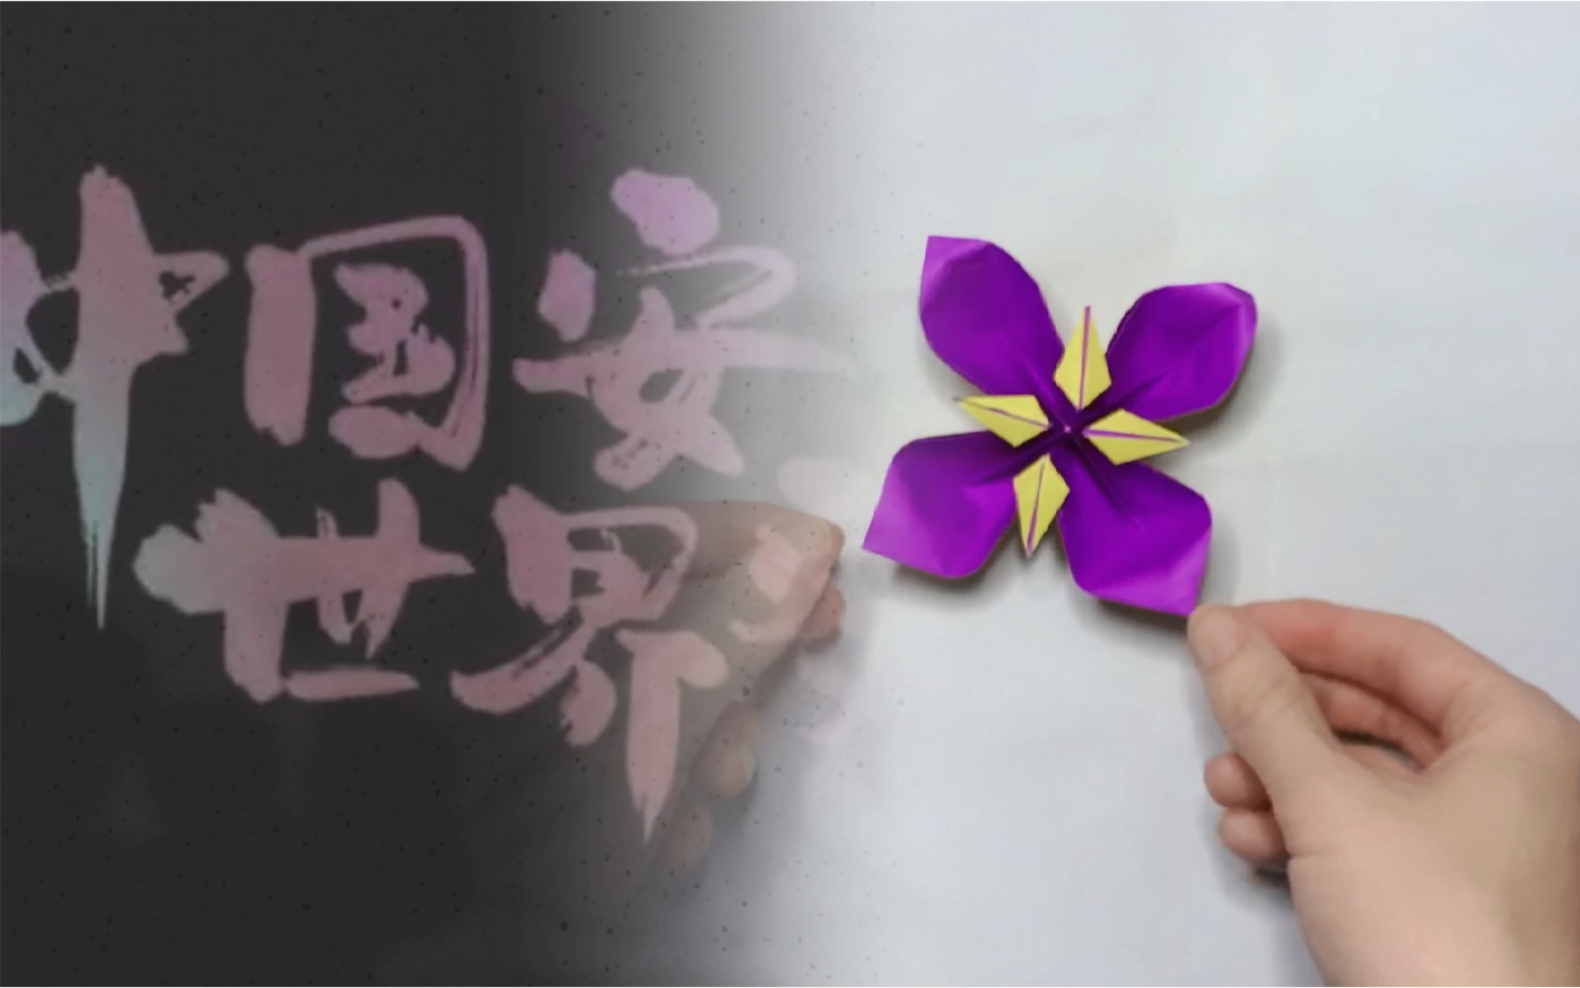 国家公祭日 折纸紫金草 纪念馆版权共享